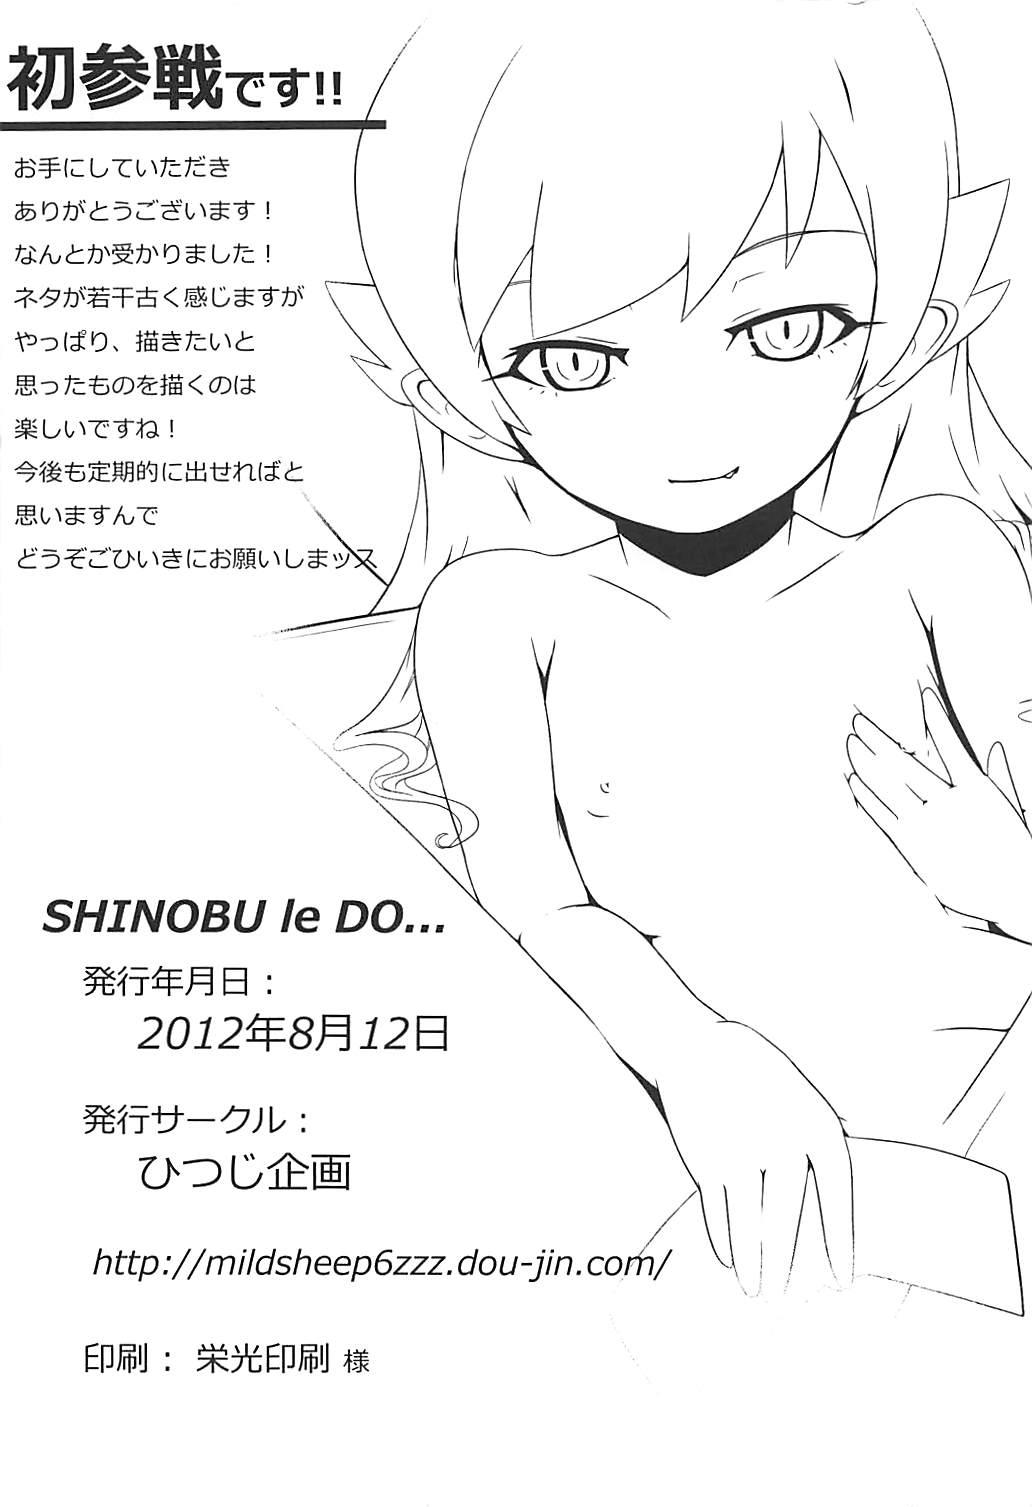 SHINOBU le DO... 24